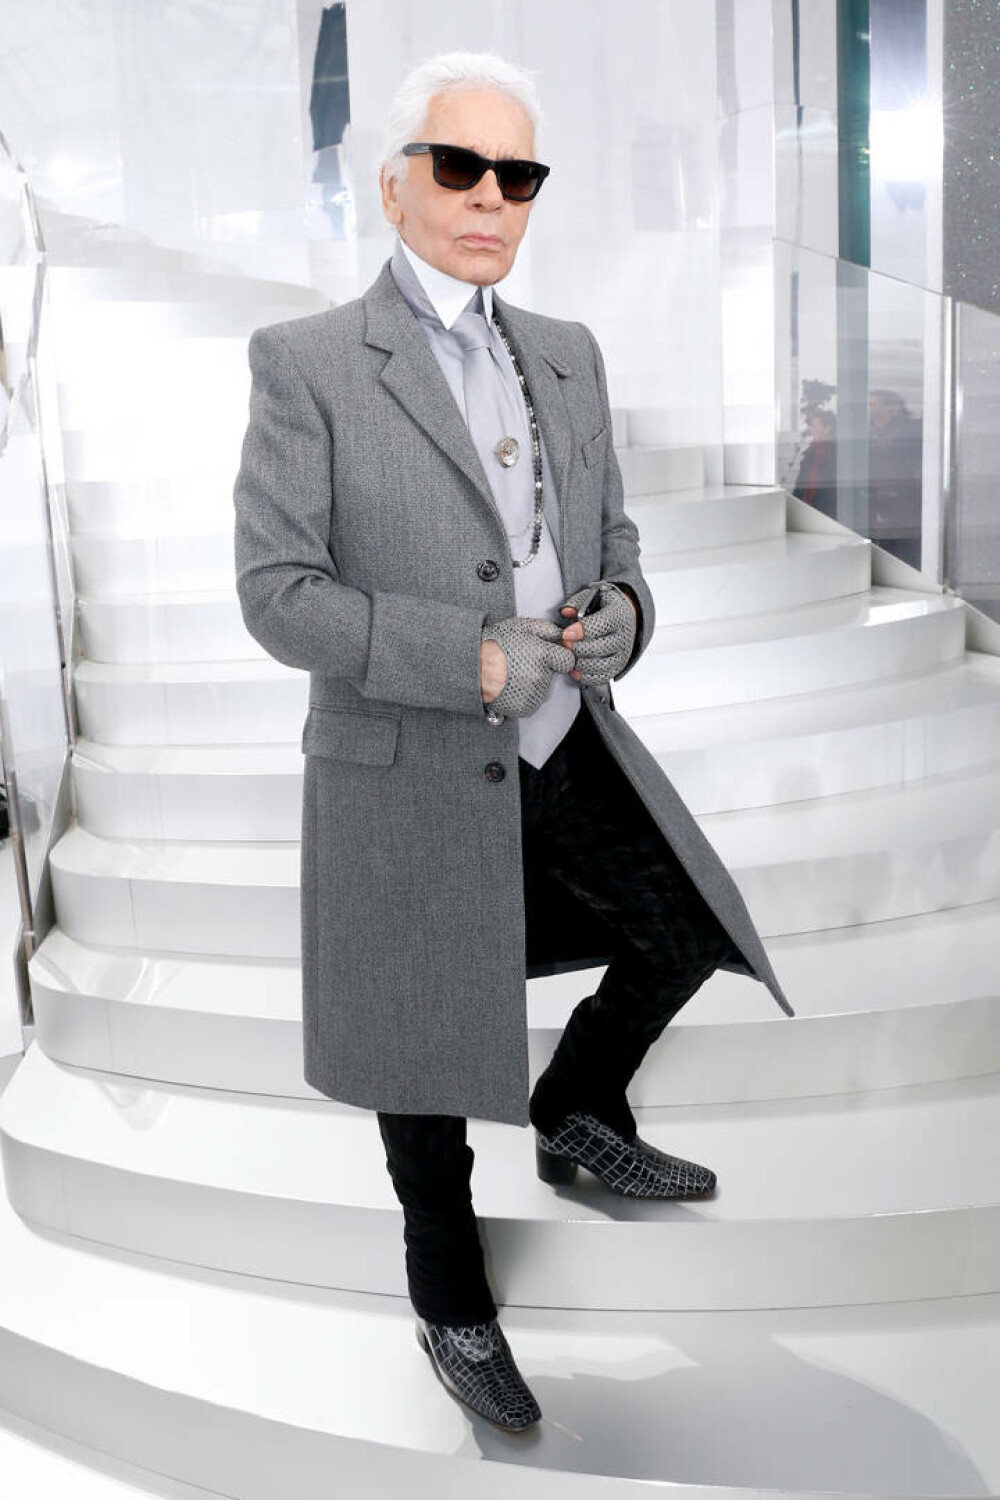 Imagini de colecție cu Karl Lagerfeld. Renumitul creator de modă ar fi împlinit 90 de ani | GALERIE FOTO - Imaginea 12